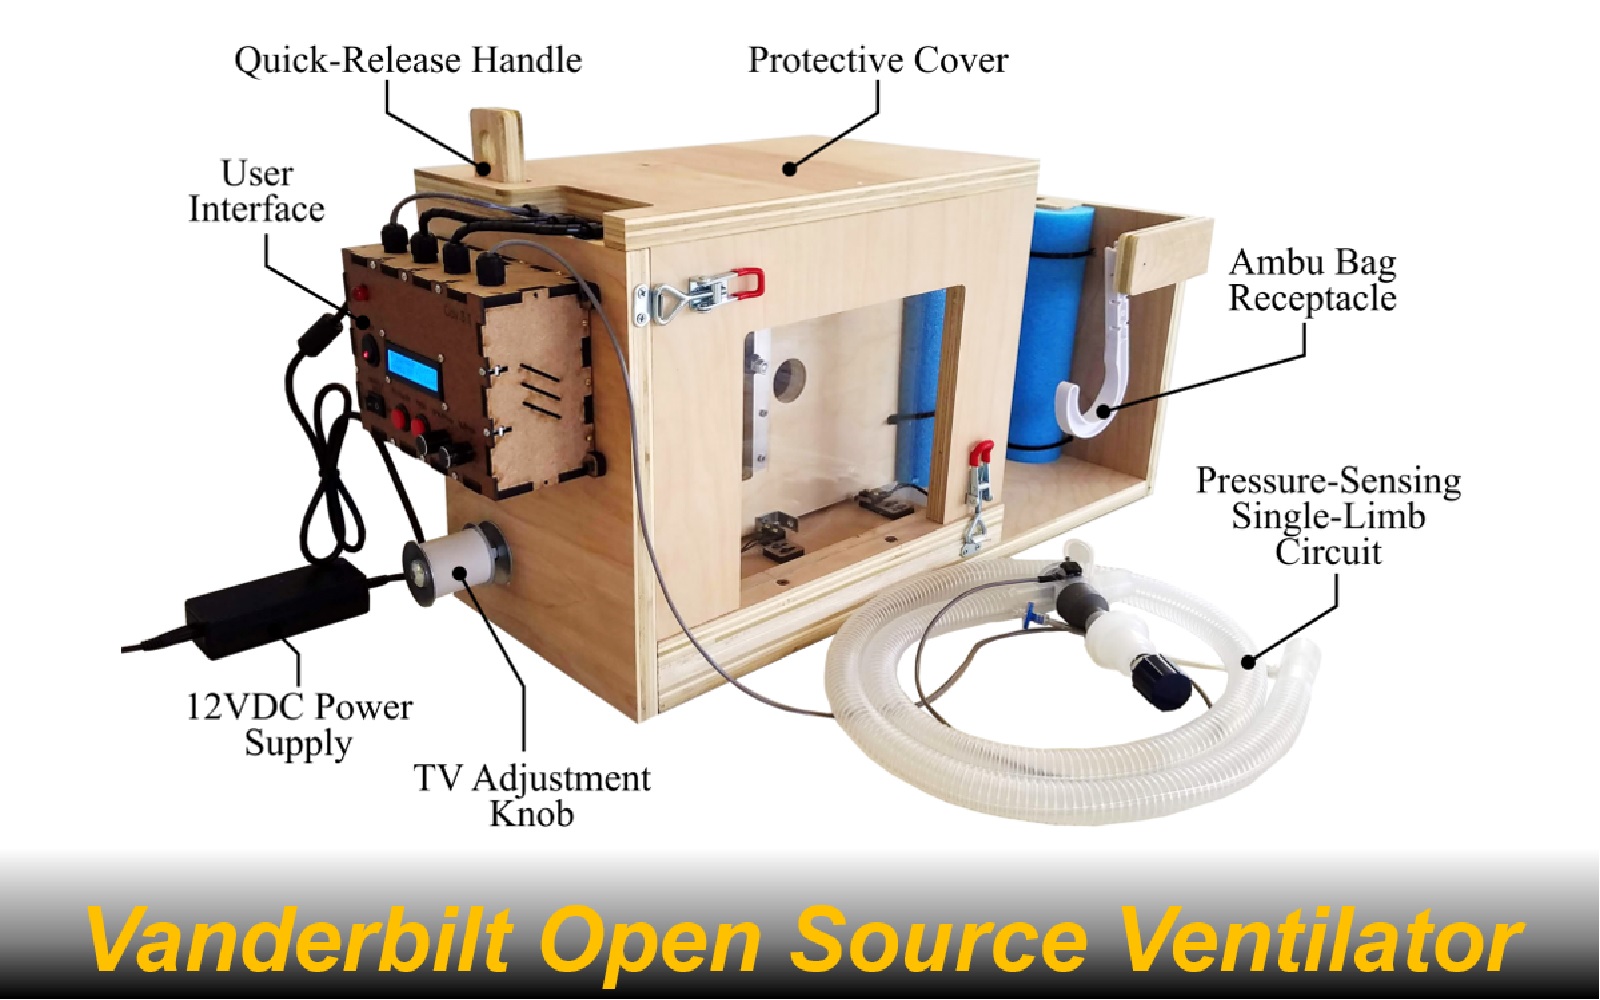 Vanderbilt Open Source Ventilator